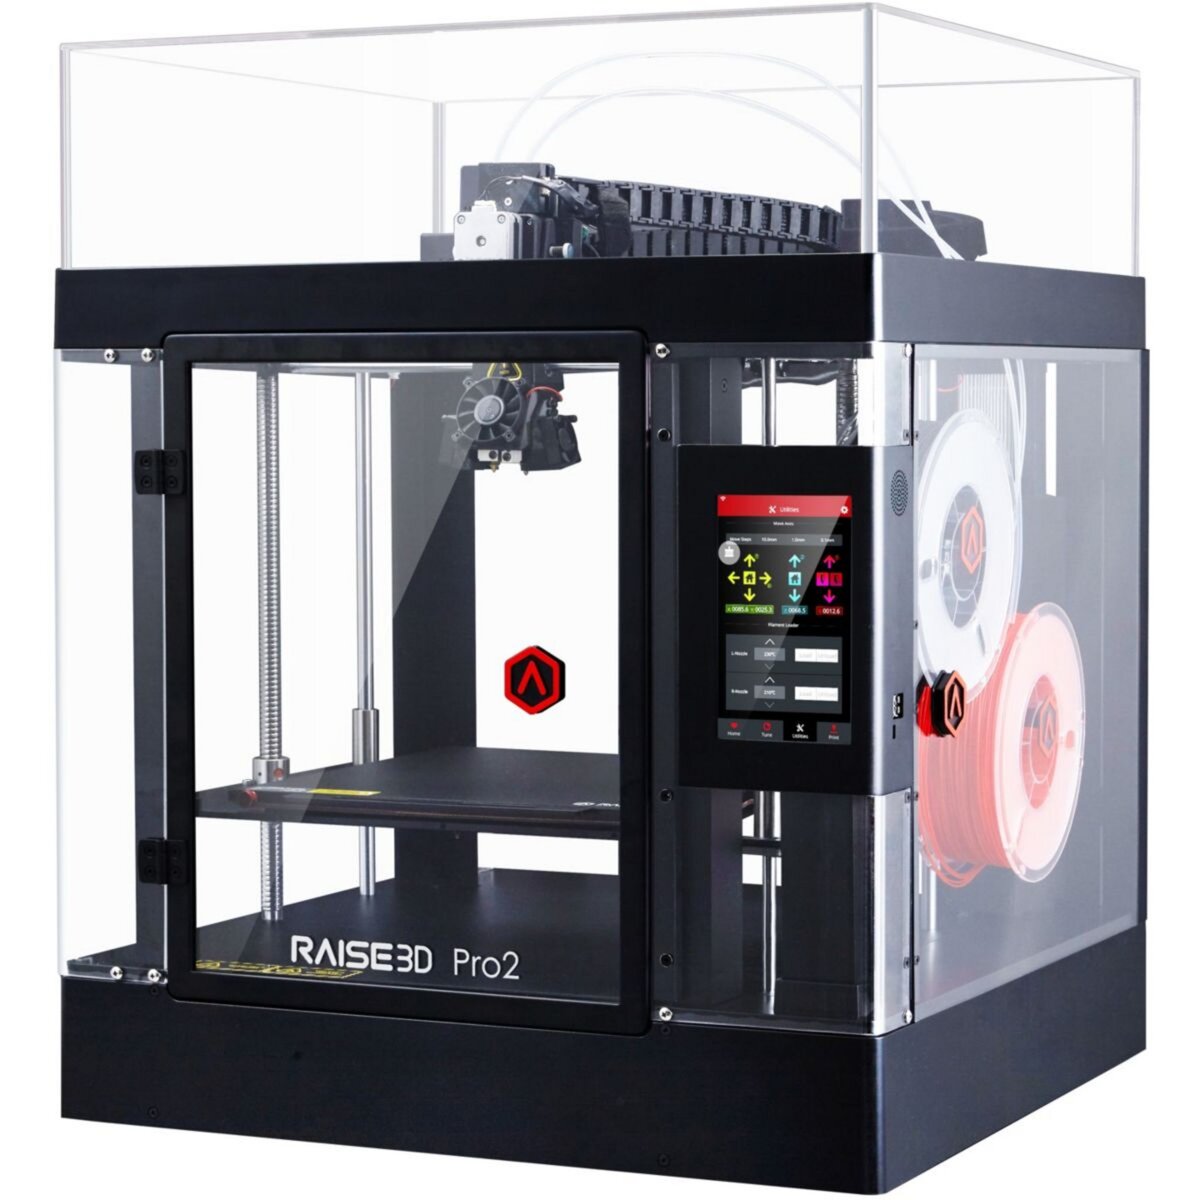 RAISE3D Imprimante 3D Raise3D Pro2 pas cher 